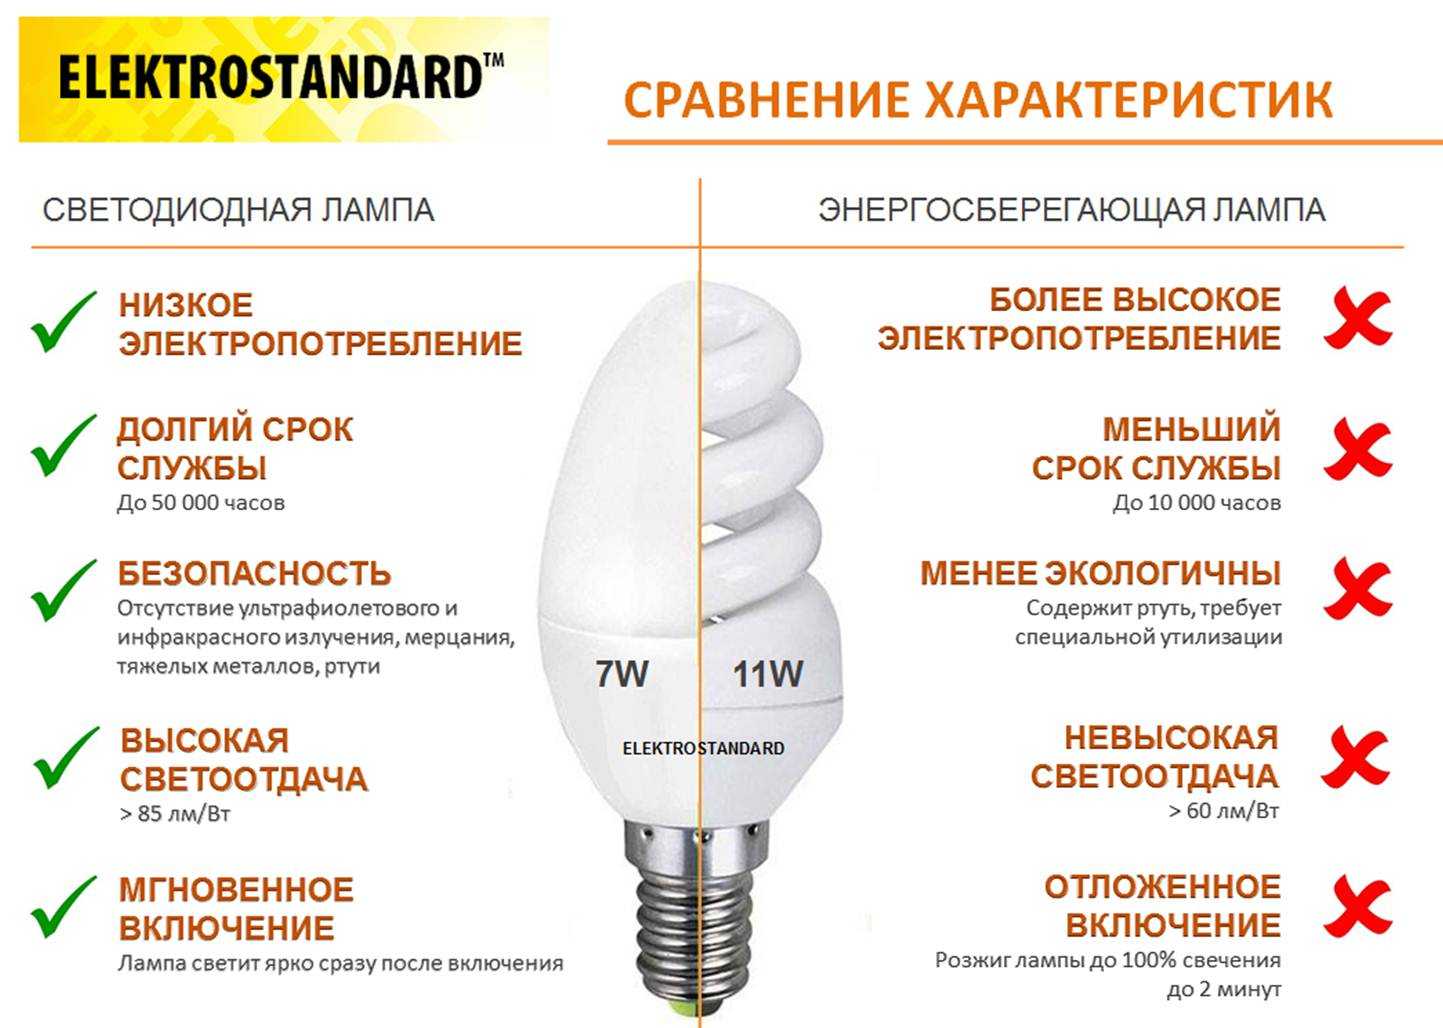 Все преимущества и недостатки светодиодных ламп